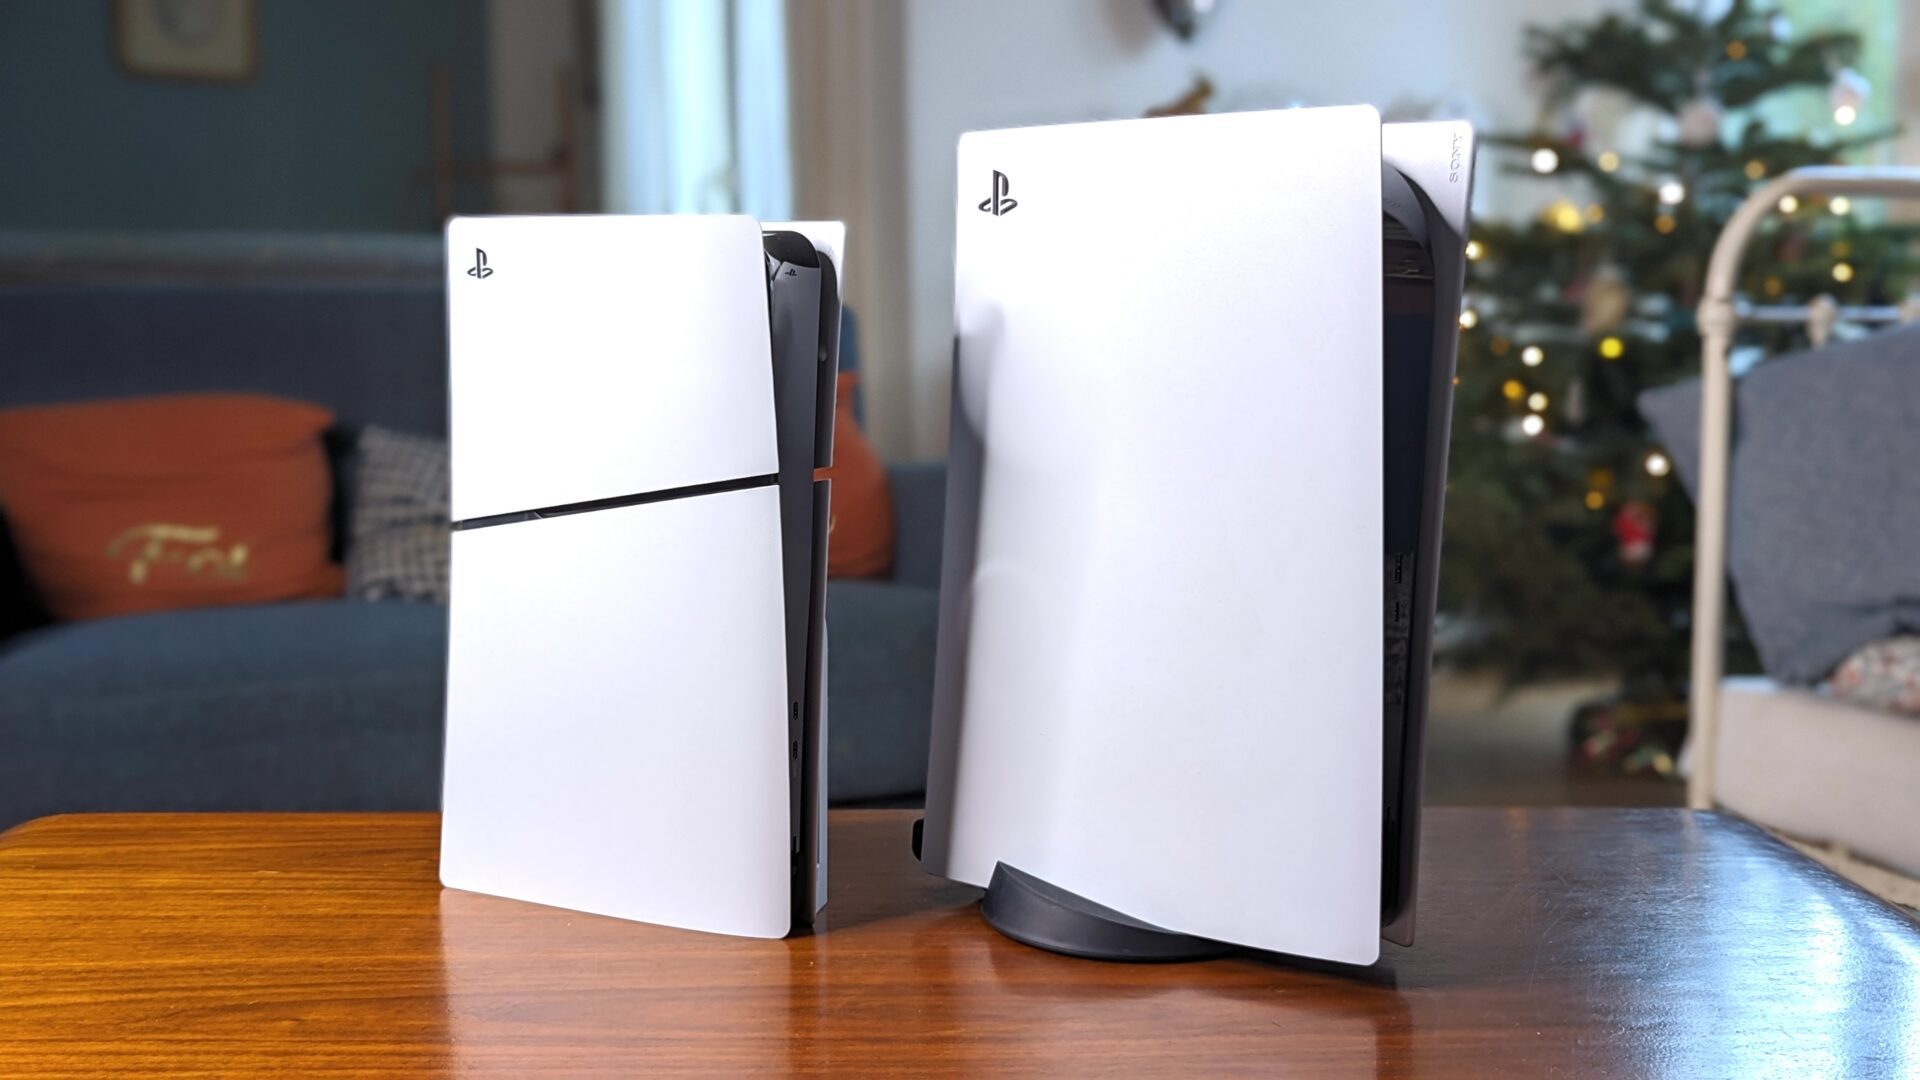 Test Sony PlayStation 4 Slim : une évolution plus discrète et plus